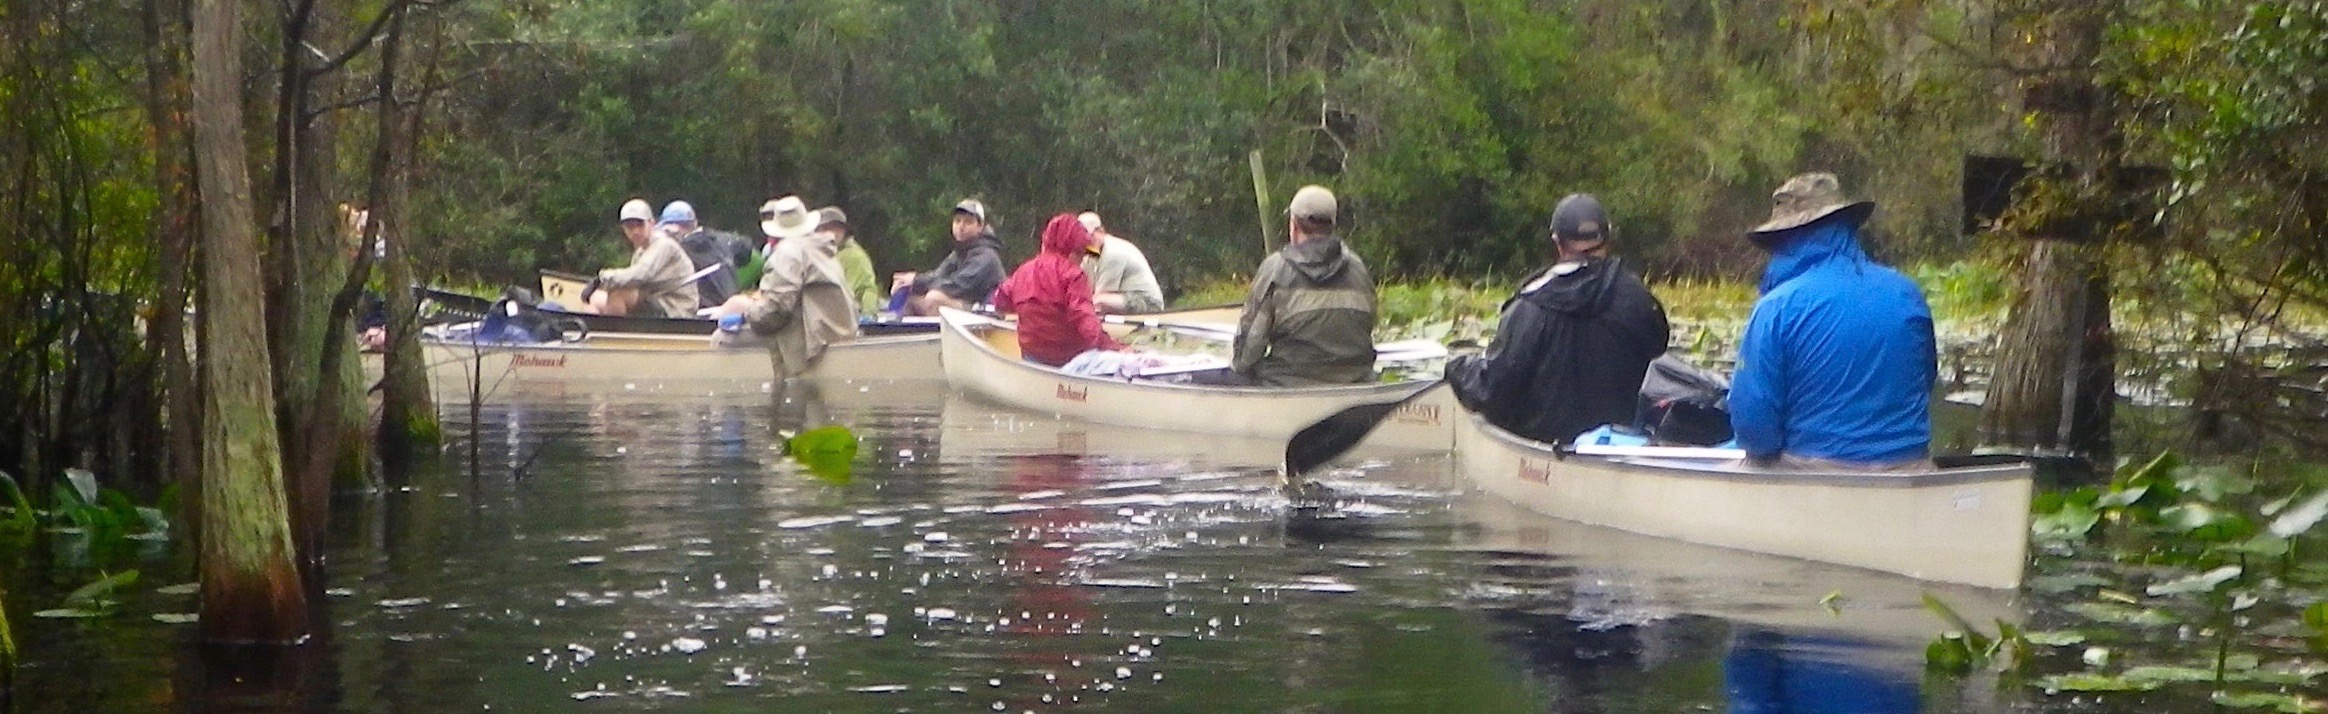 georgia canoe trips